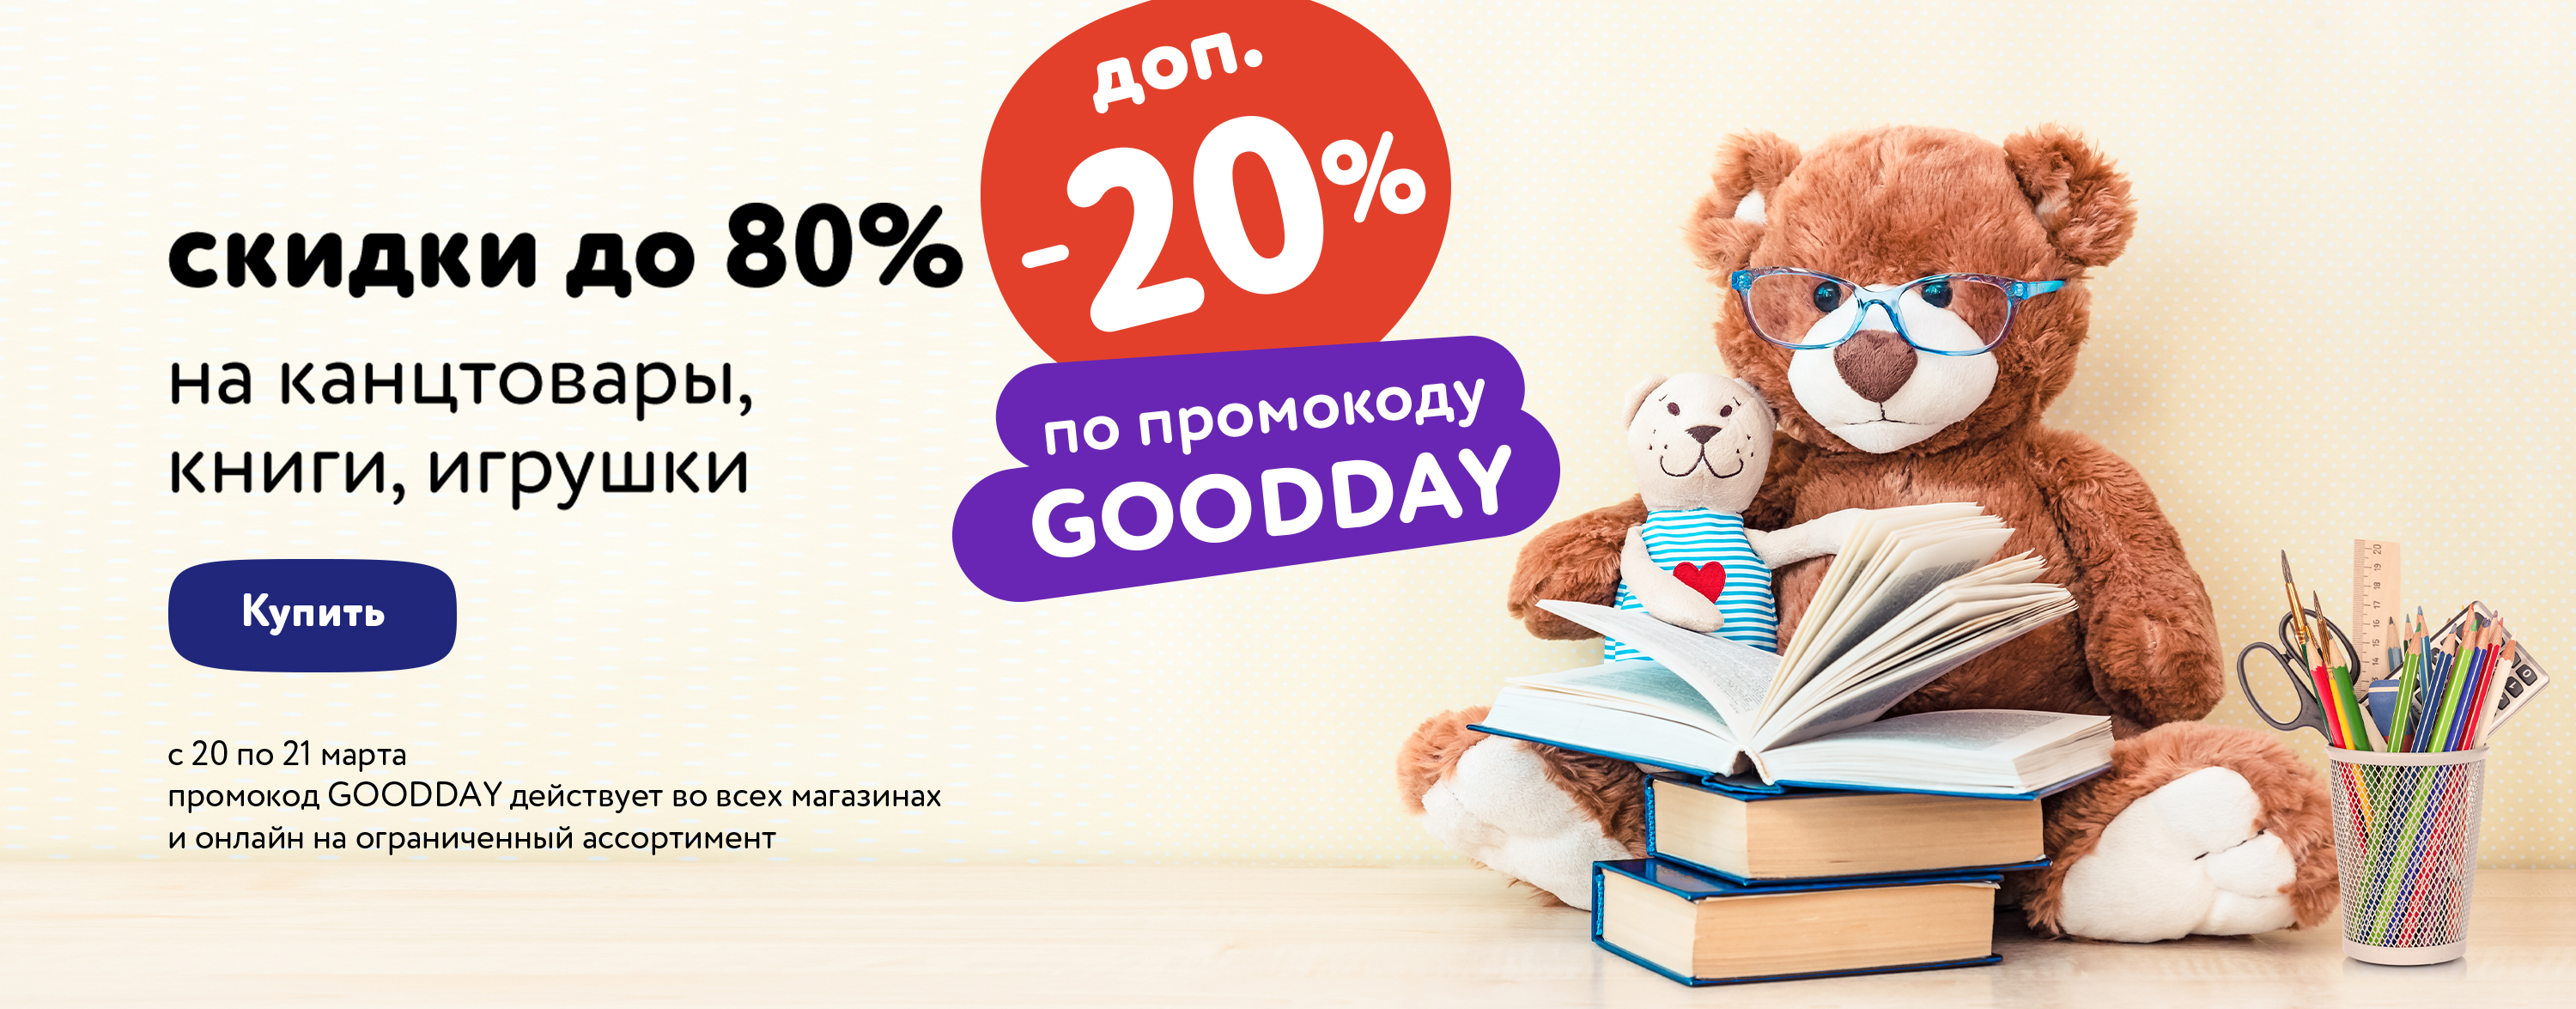 МП Доп. скидка 20% по промокоду на книги, канцелярские товары и игрушки GOODDAY